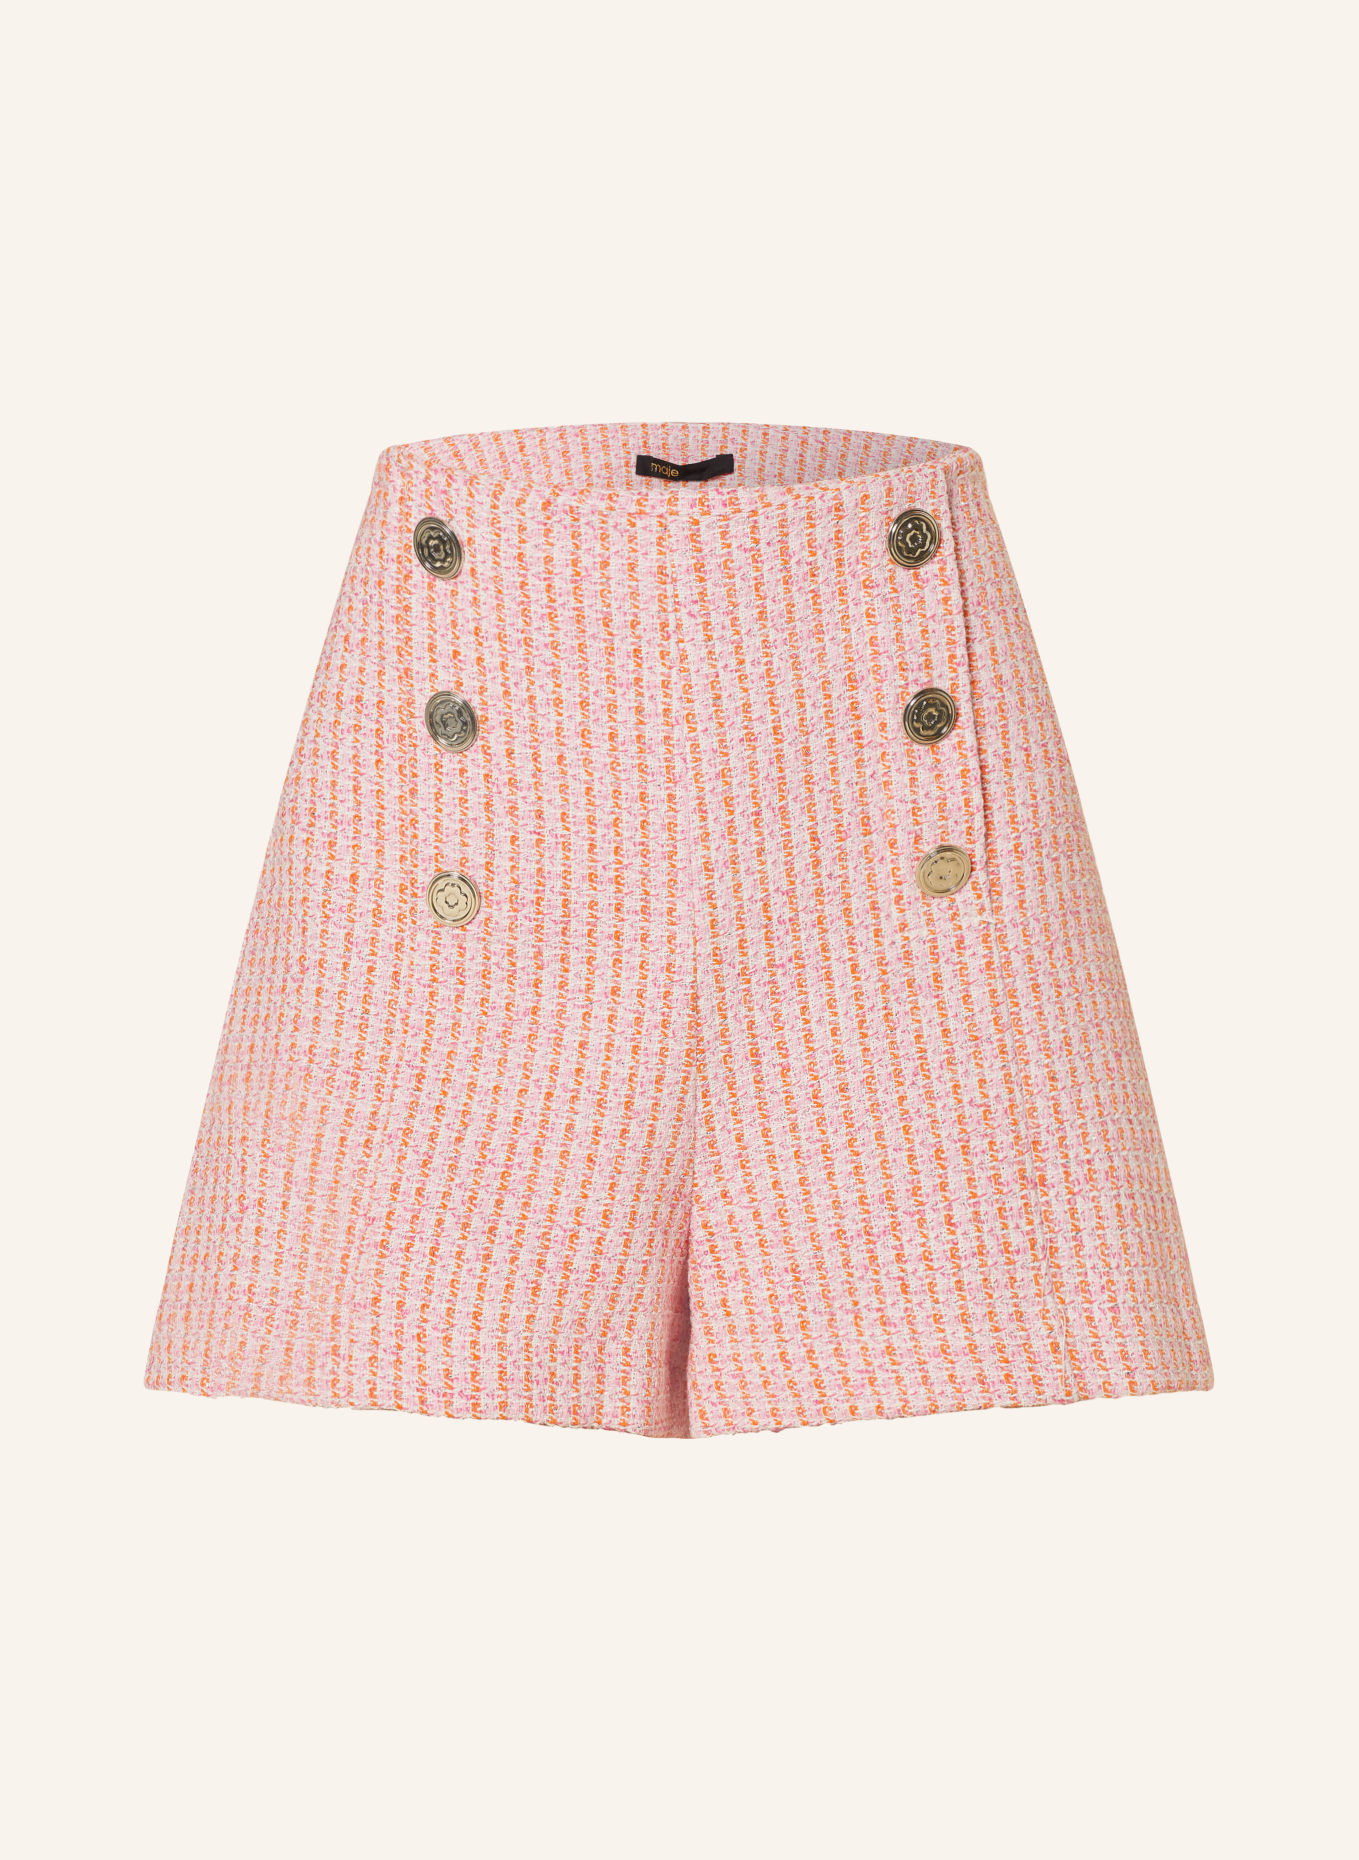 maje Tweed-Shorts, Farbe: PINK/ ORANGE (Bild 1)